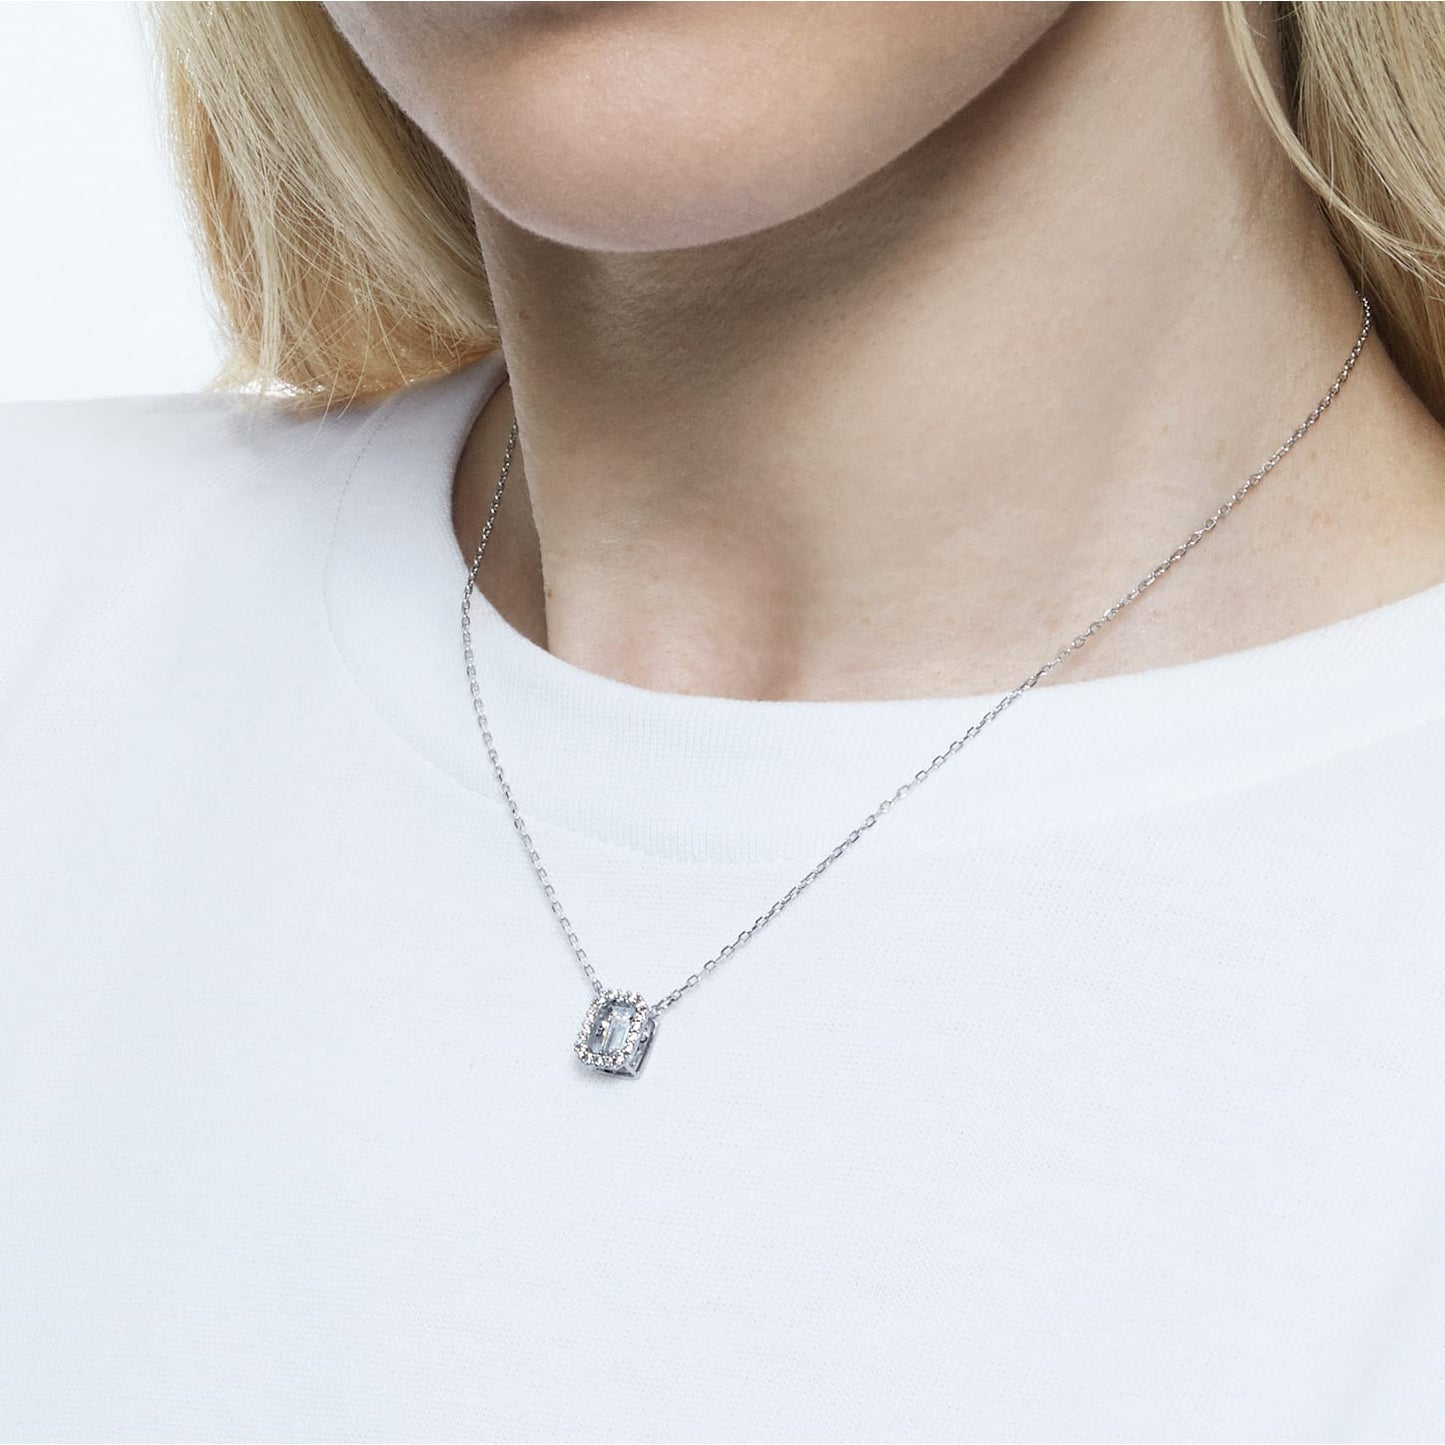 Millenia - Octagonal - White Silver - Necklace - Swarovski